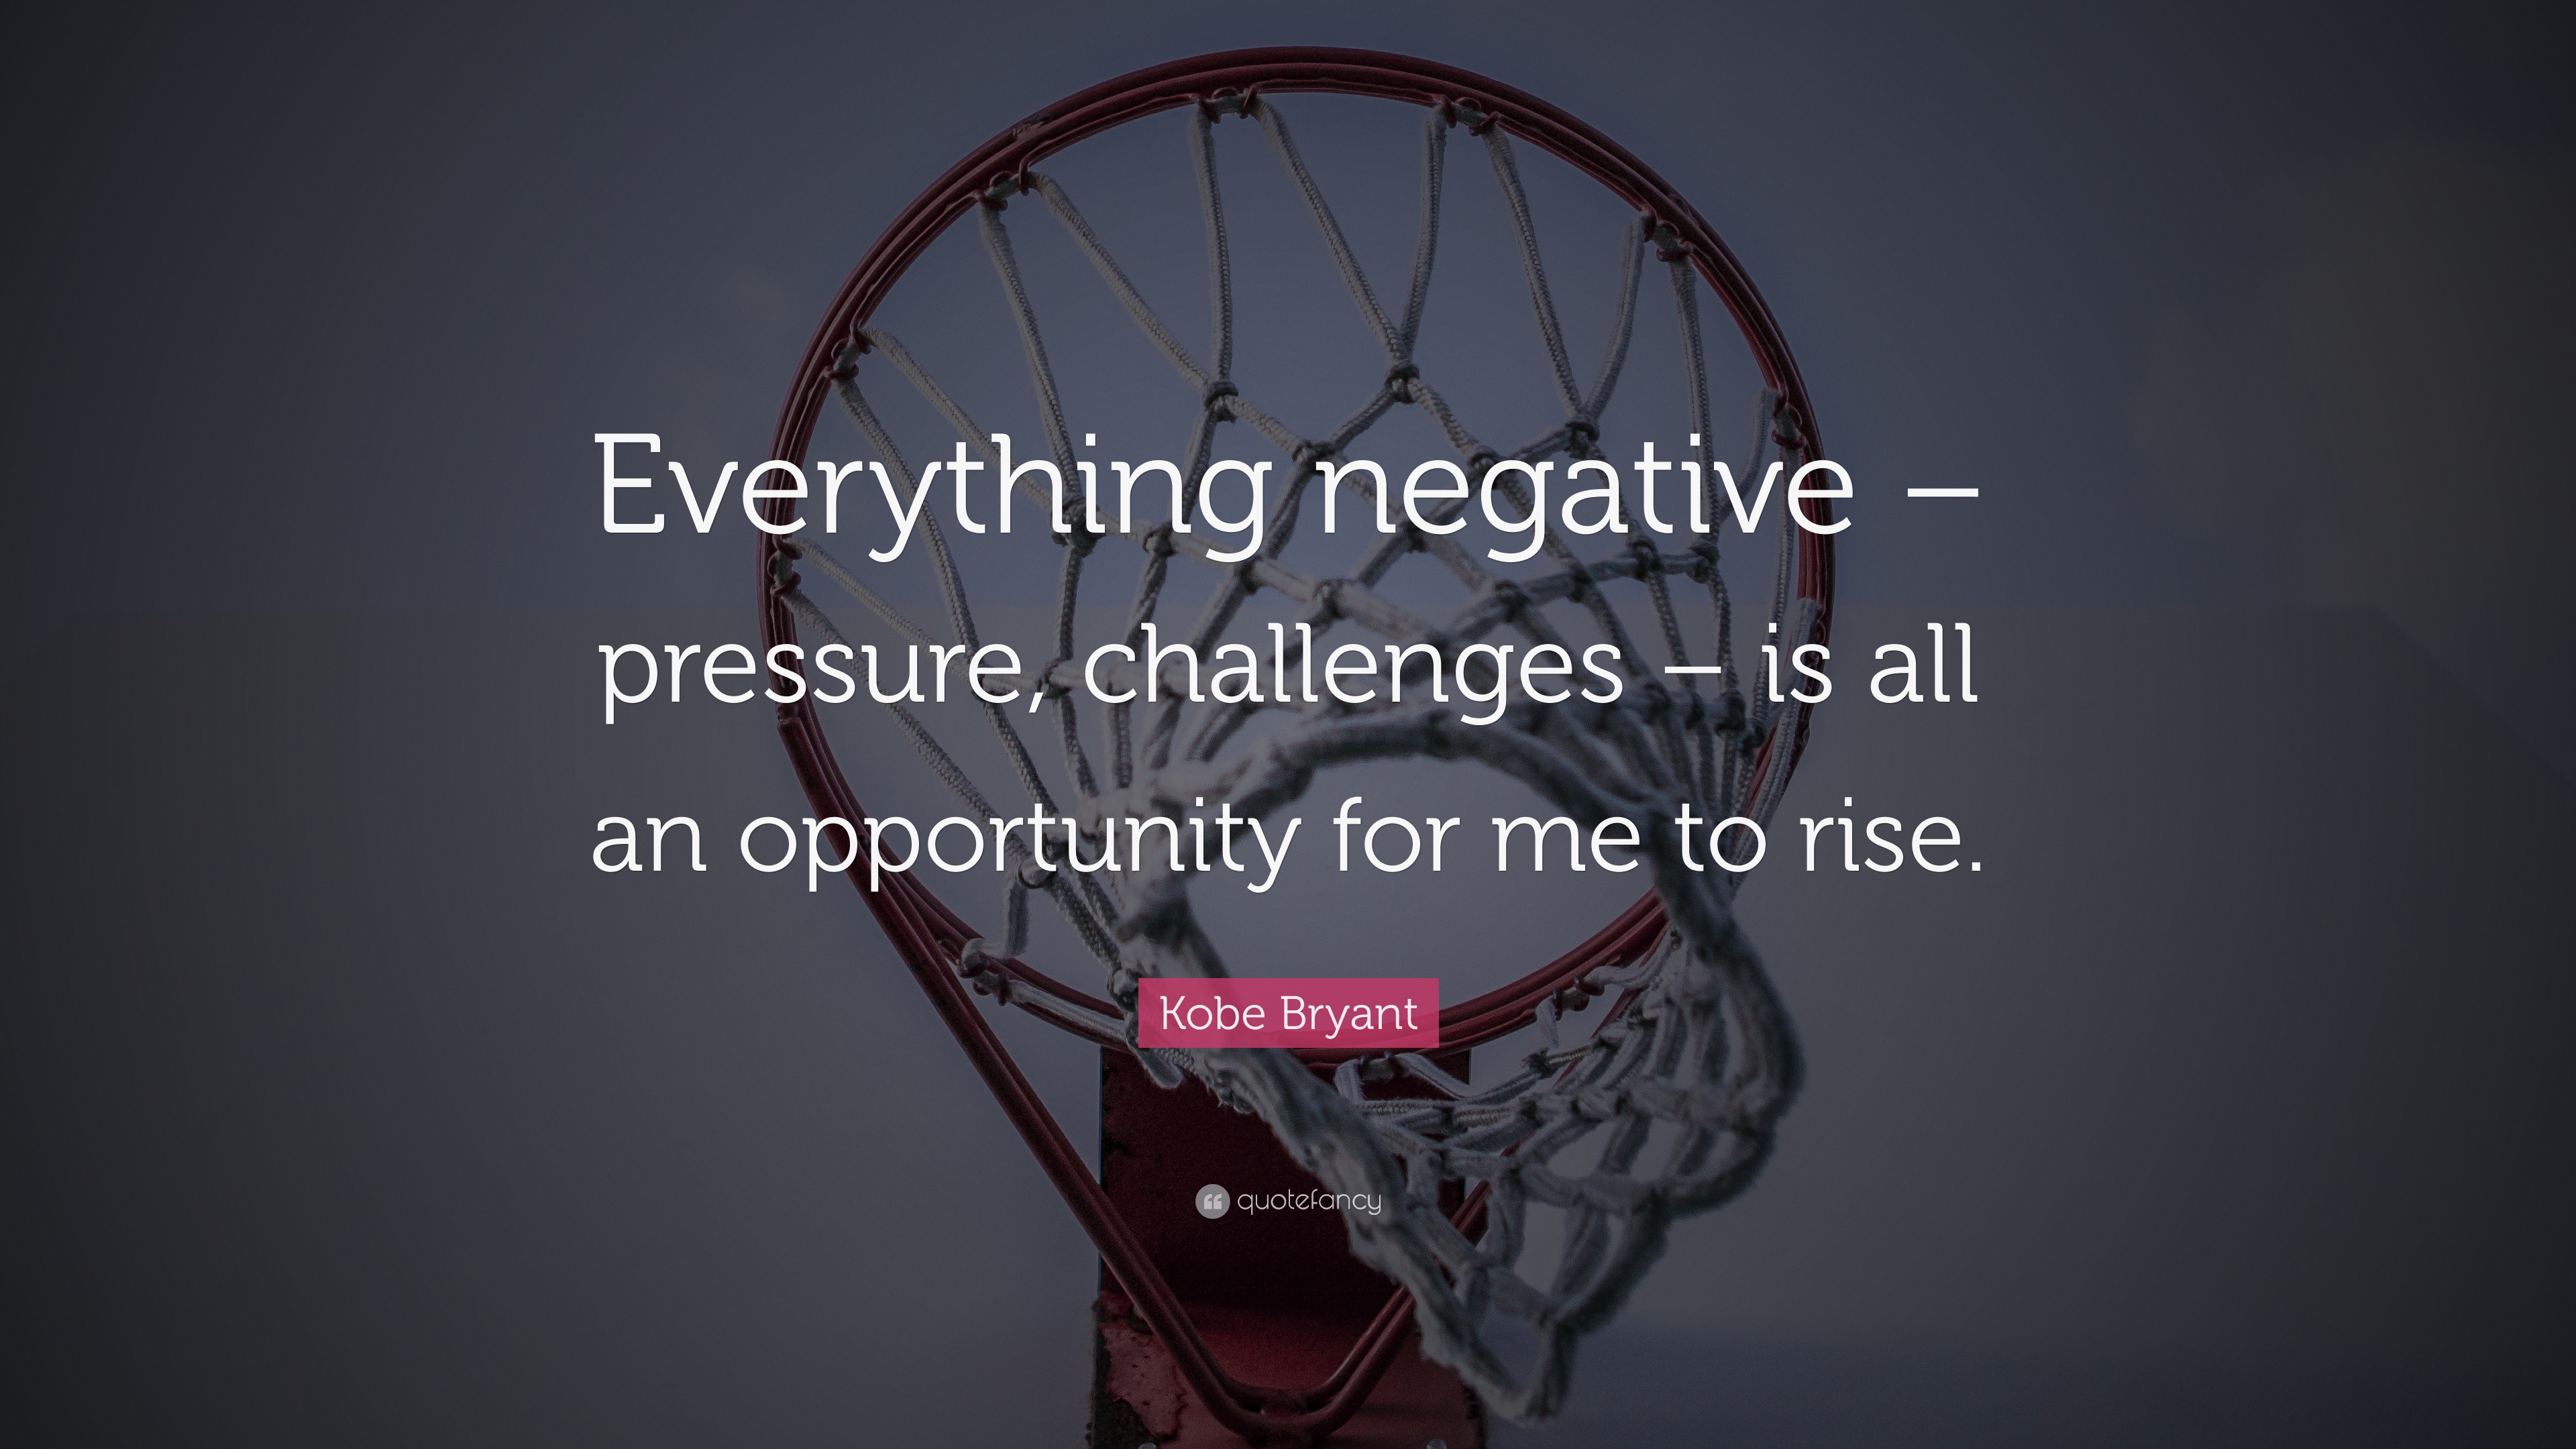 Kobe Bryant Quote: “Everything negative